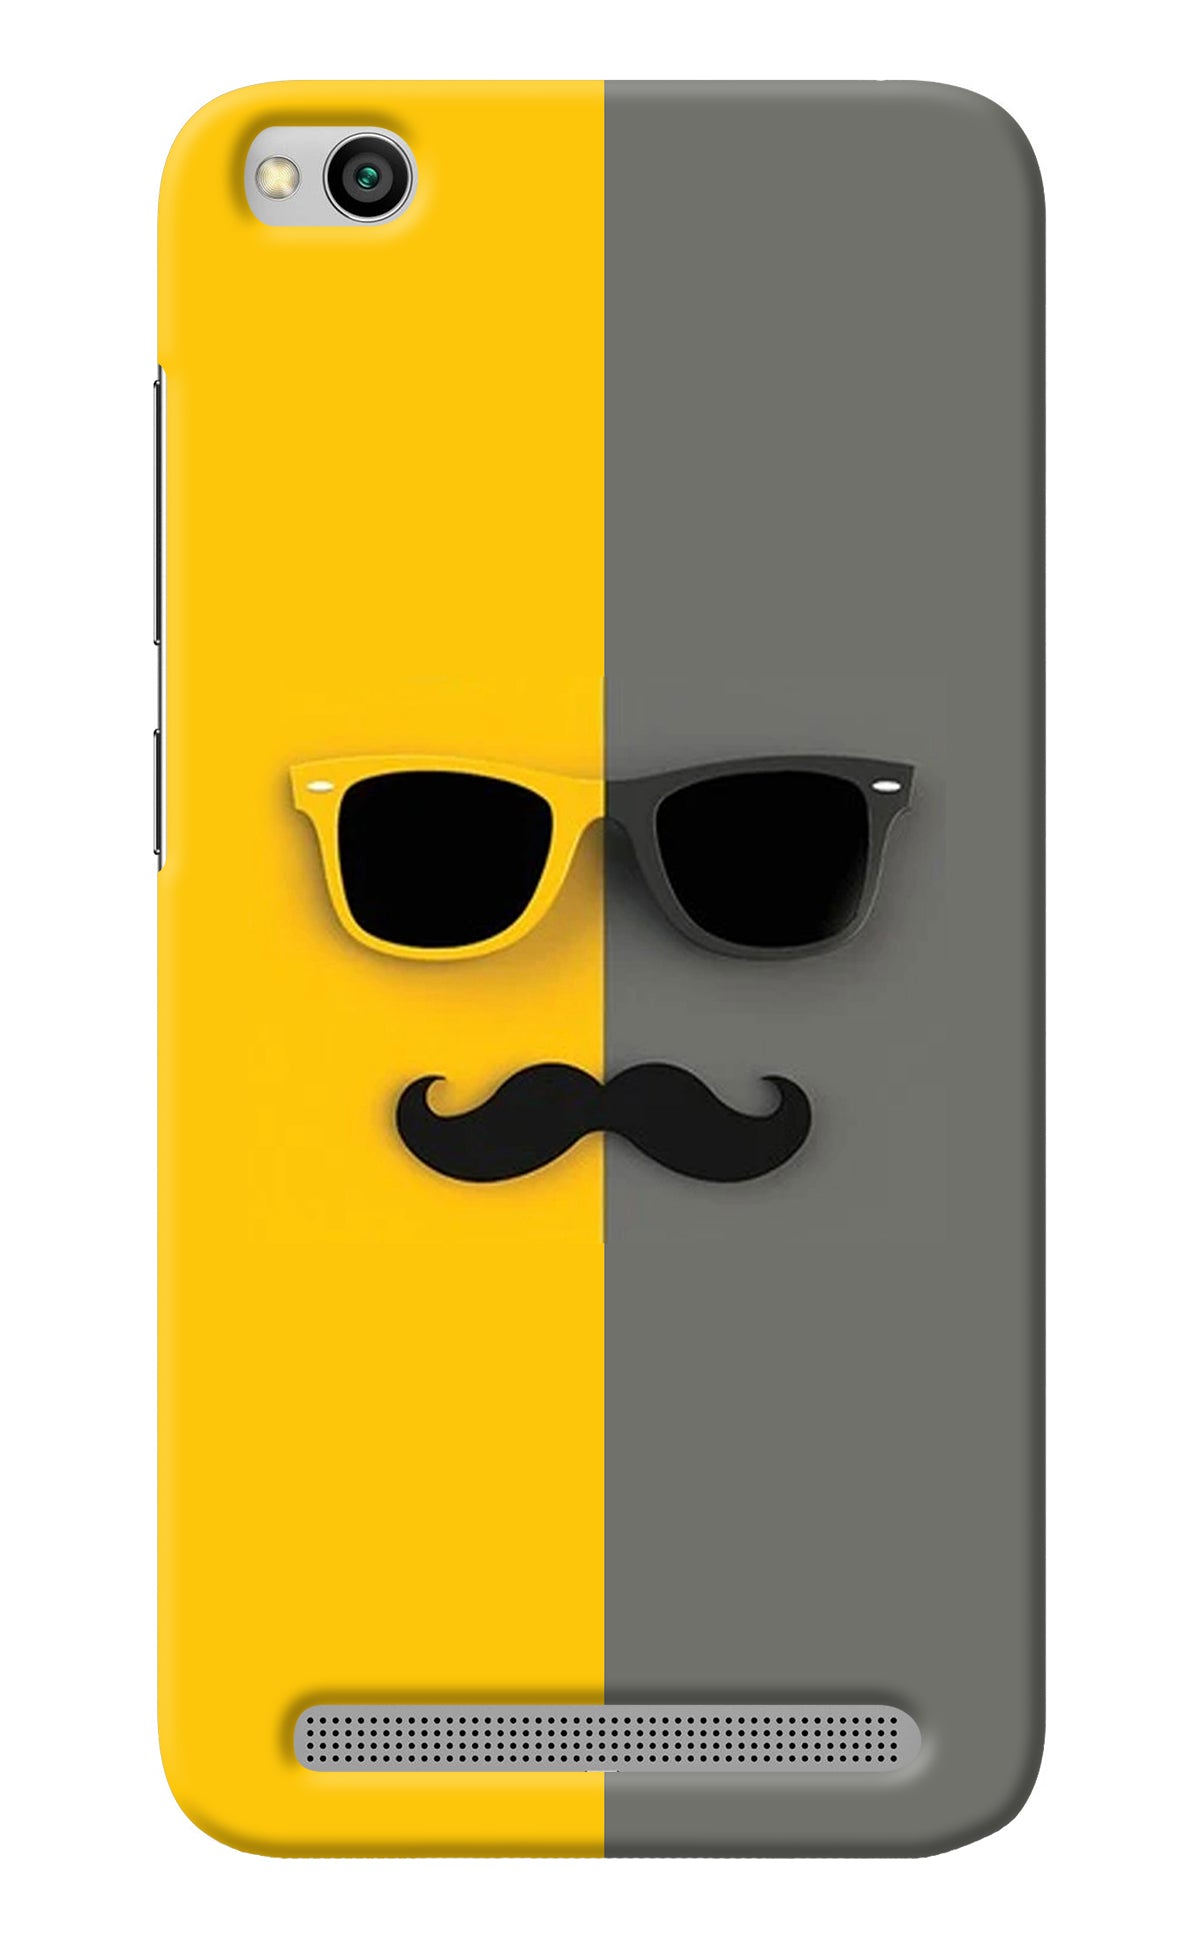 Sunglasses with Mustache Redmi 5A Back Cover